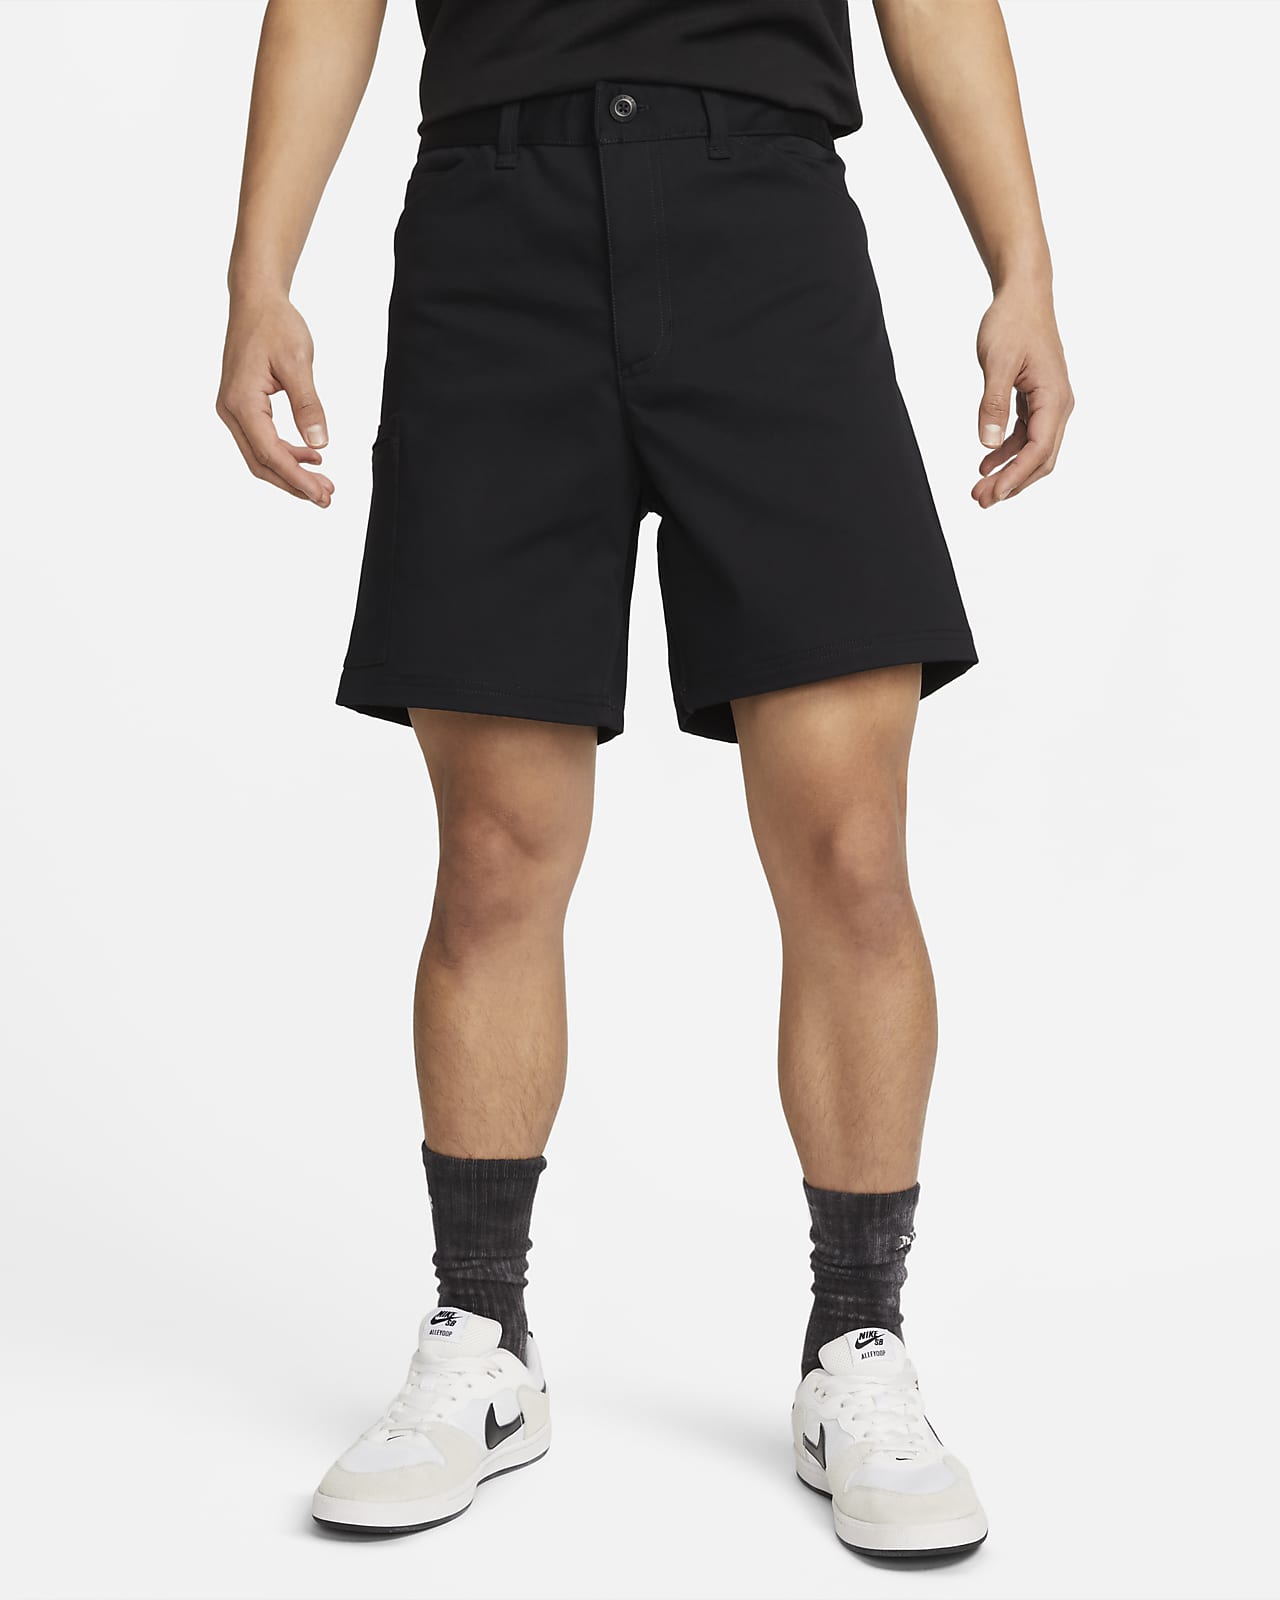 Nike SB Skate Shorts